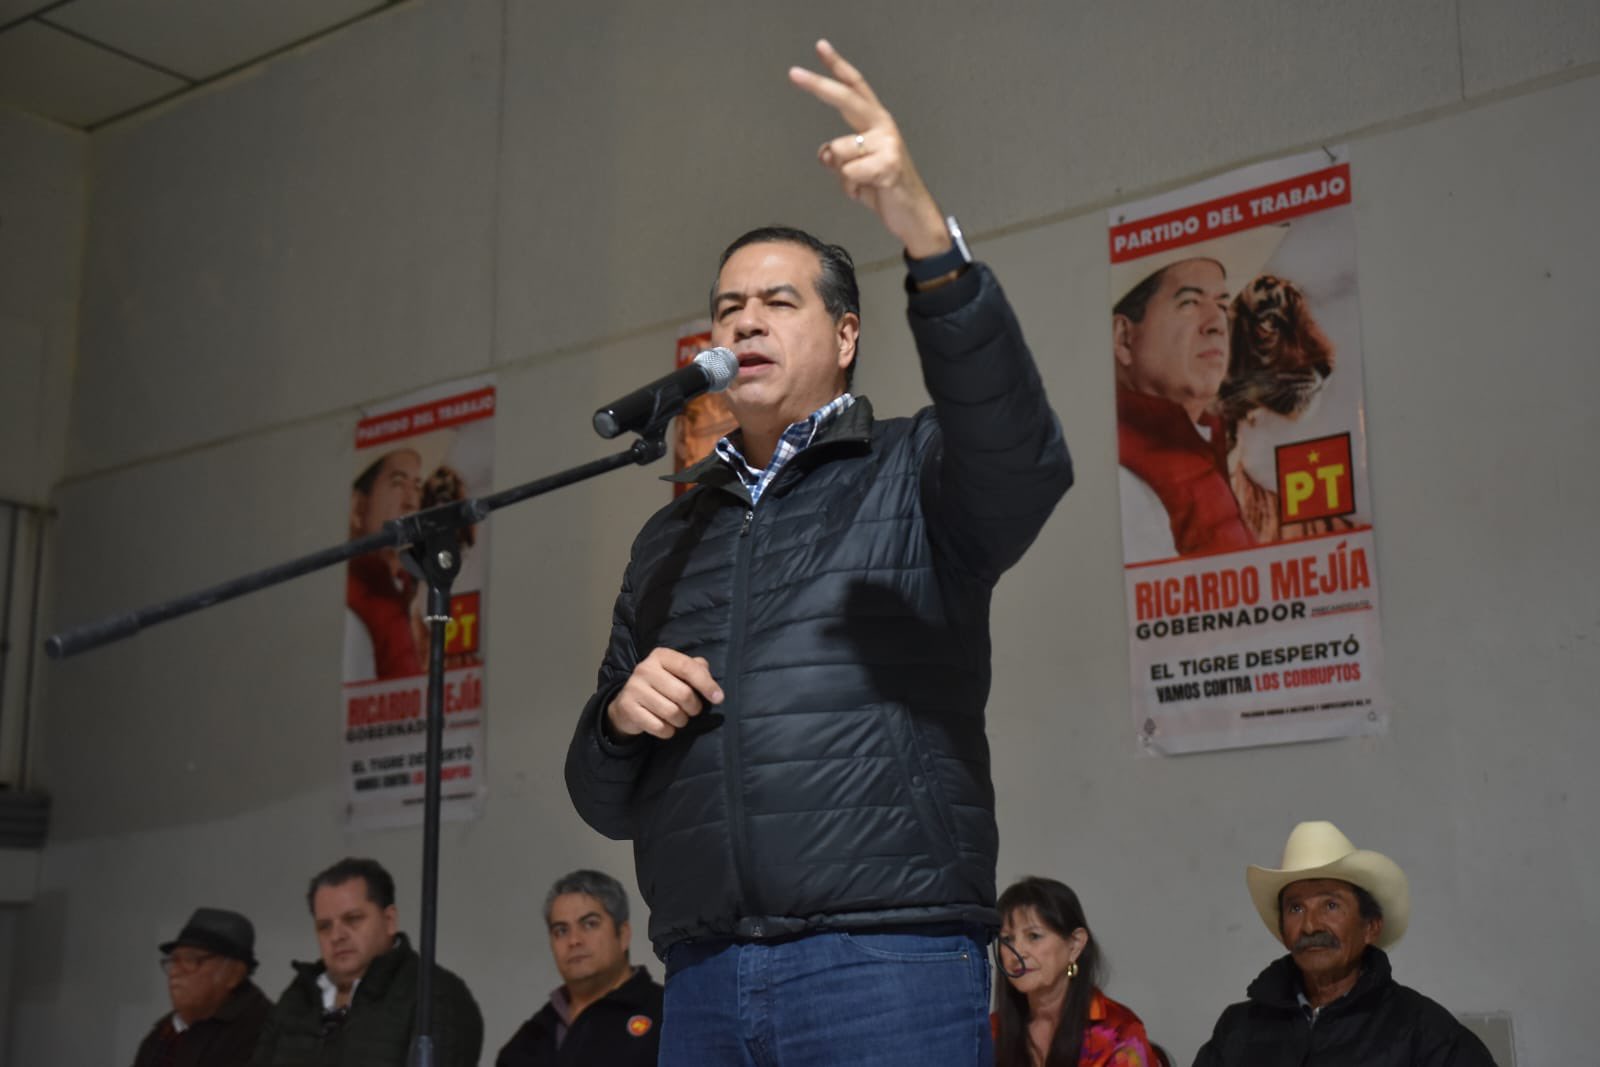 Quién es Ricardo Mejía, candidato del PT en Coahuila 2